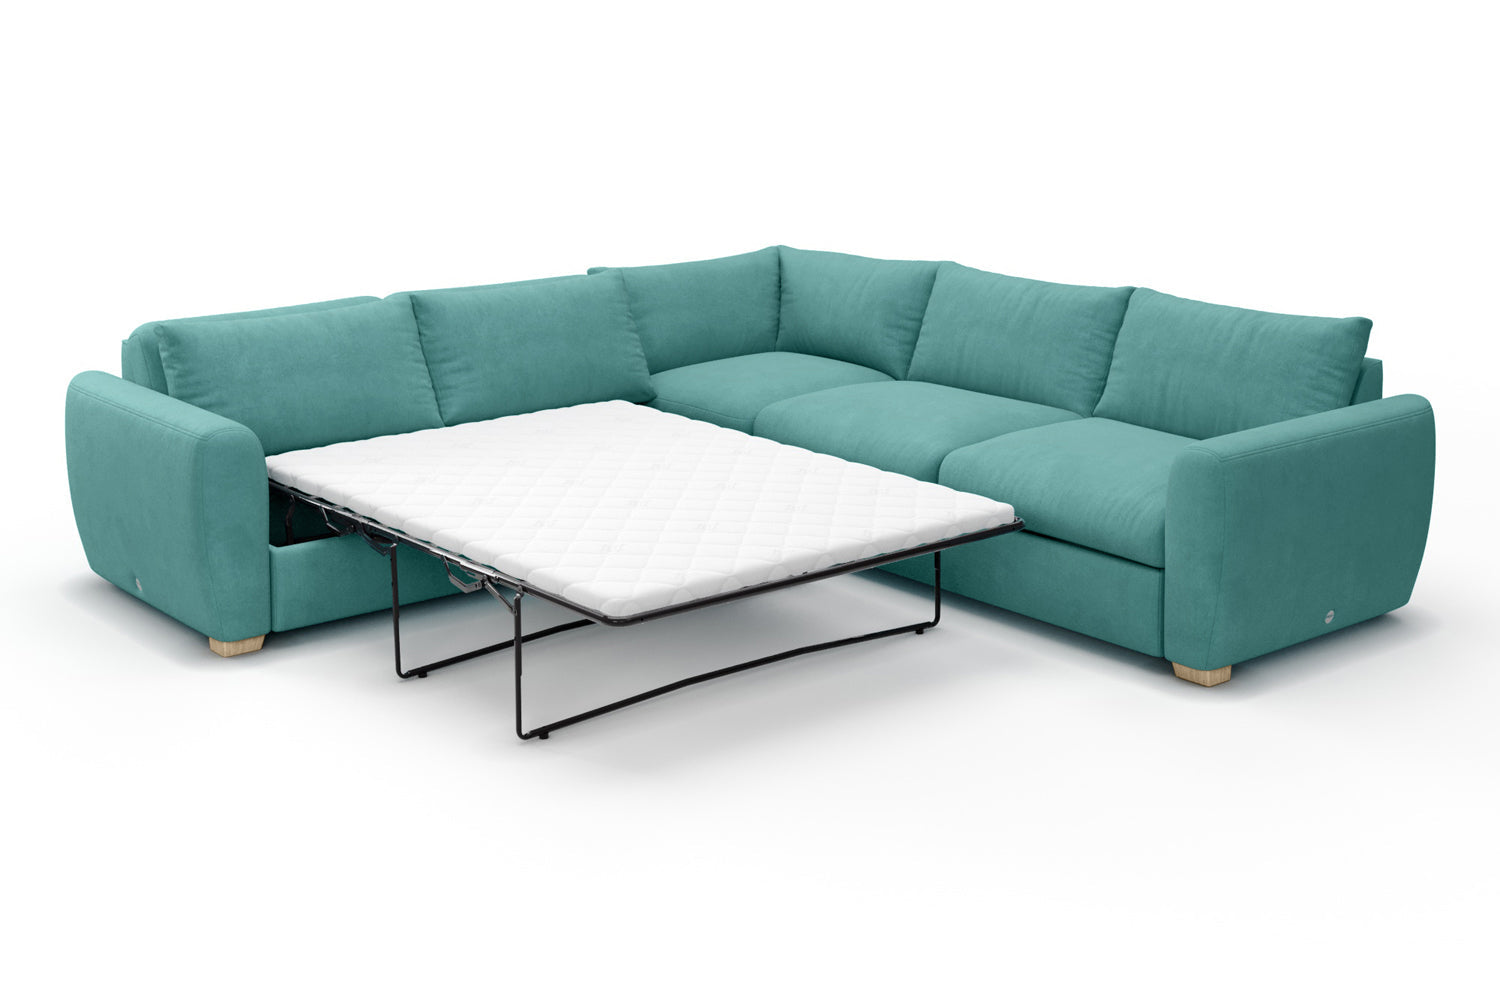 SNUG | The Cloud Sundae Corner Sofa Bed in Soft Teal